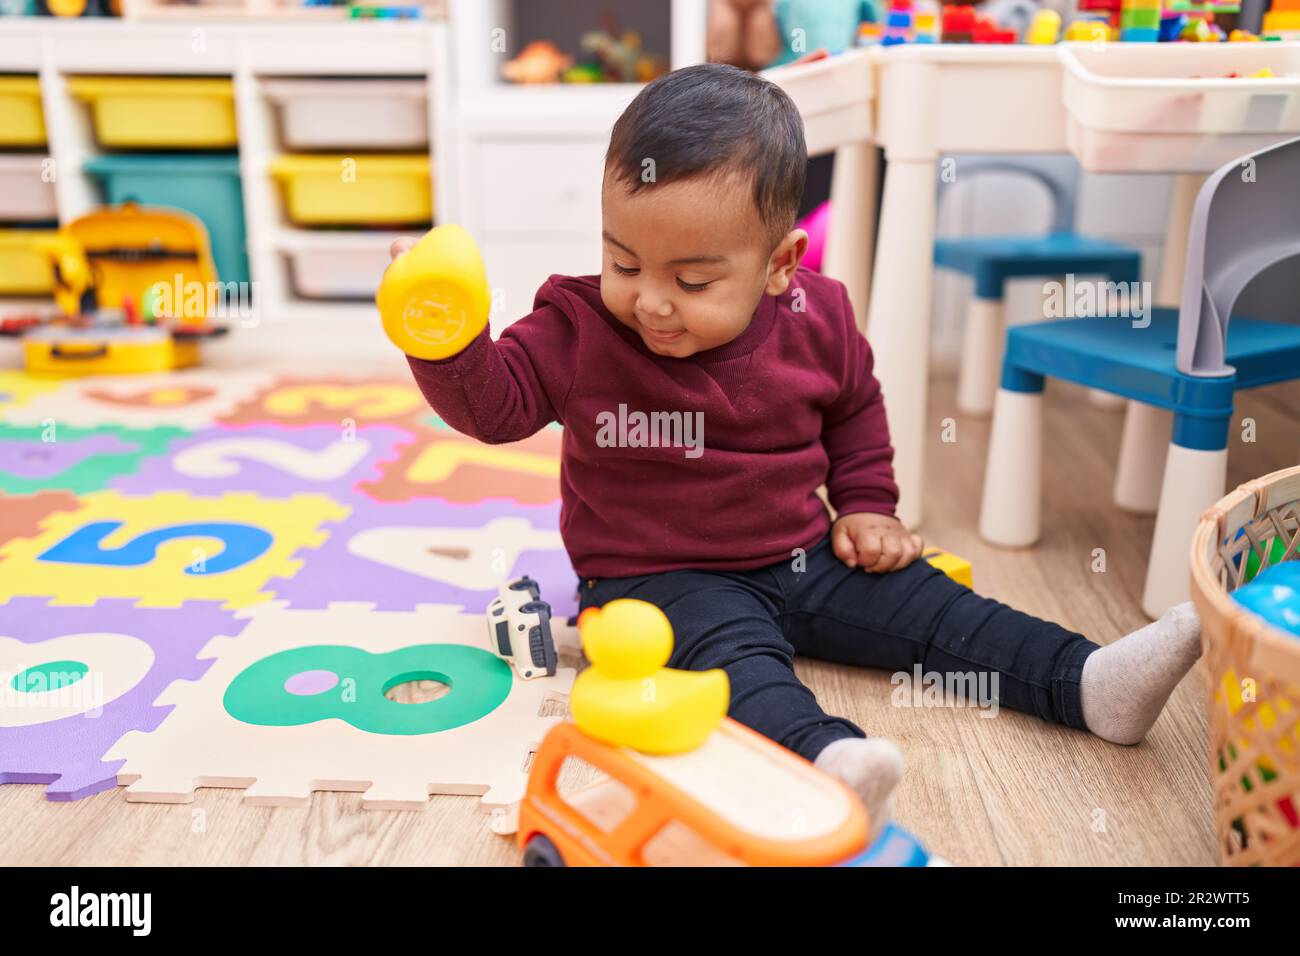 Ein bezaubernder spanischer Junge, der mit Entenspielzeug spielt und im Kindergarten auf dem Boden sitzt Stockfoto